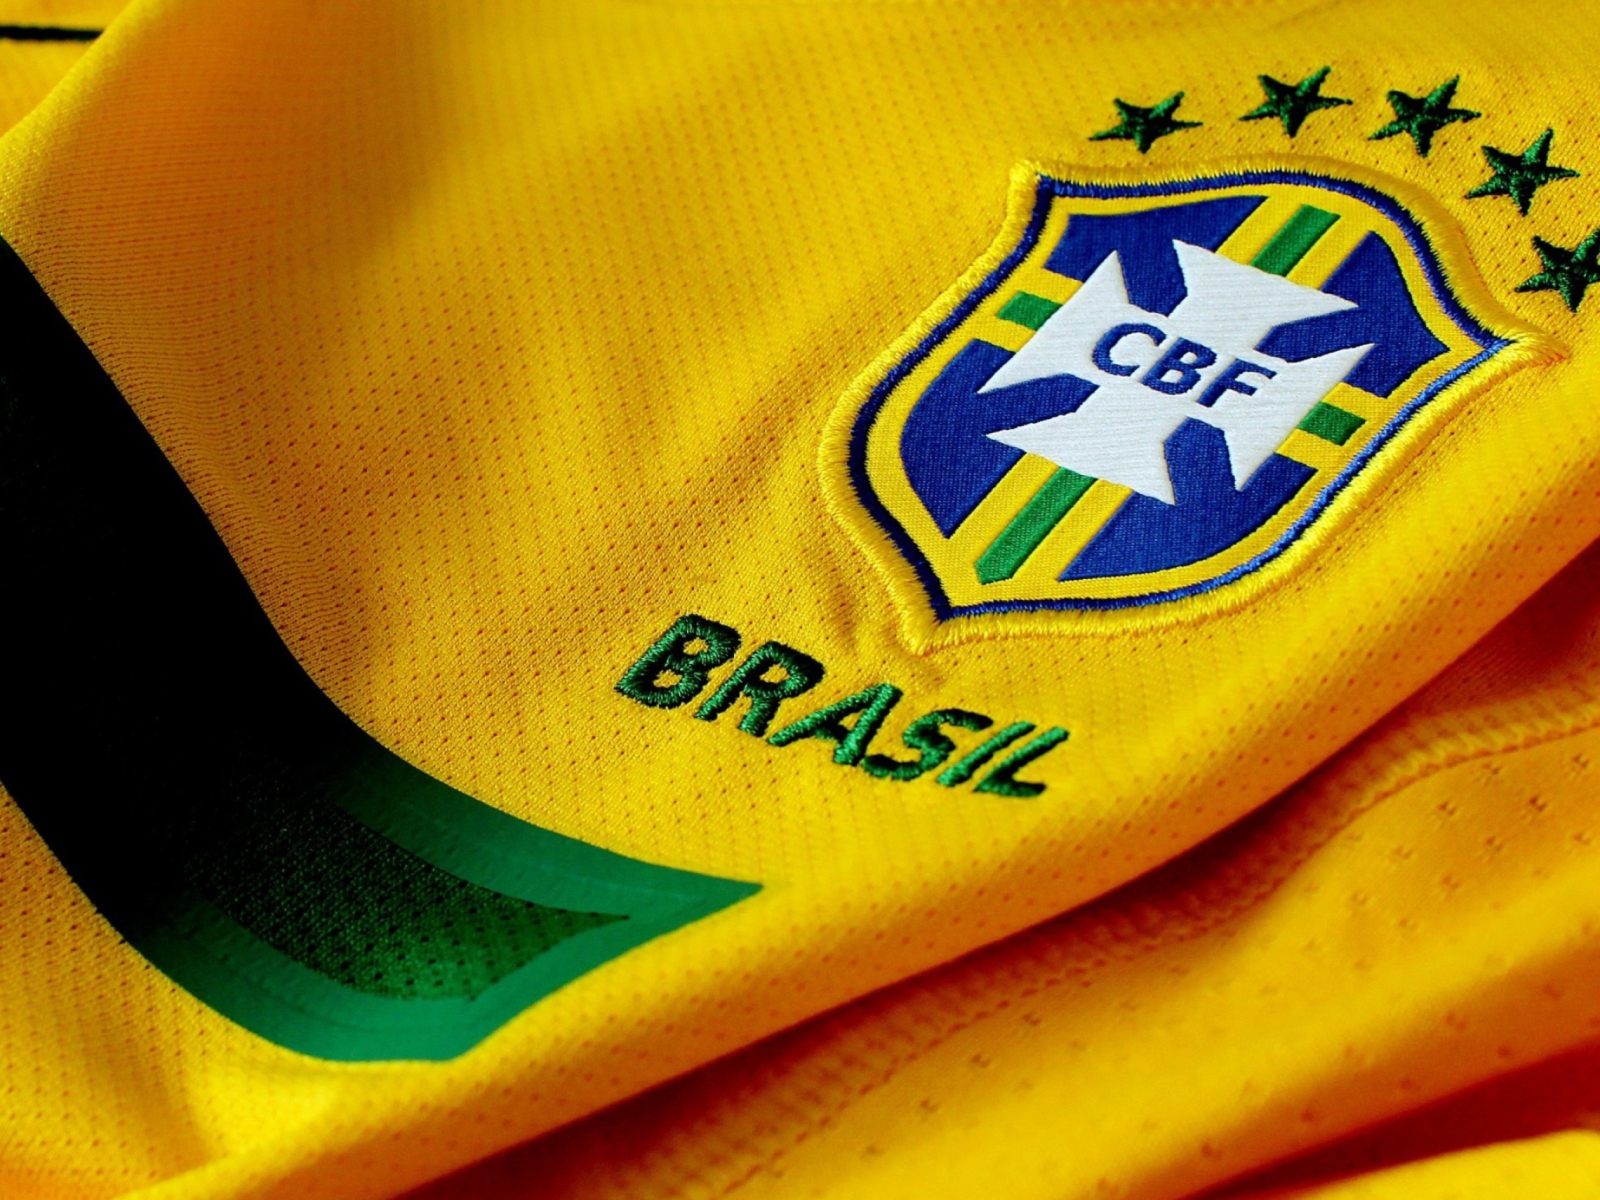 Brazil Football Club wallpaper 1600x1200